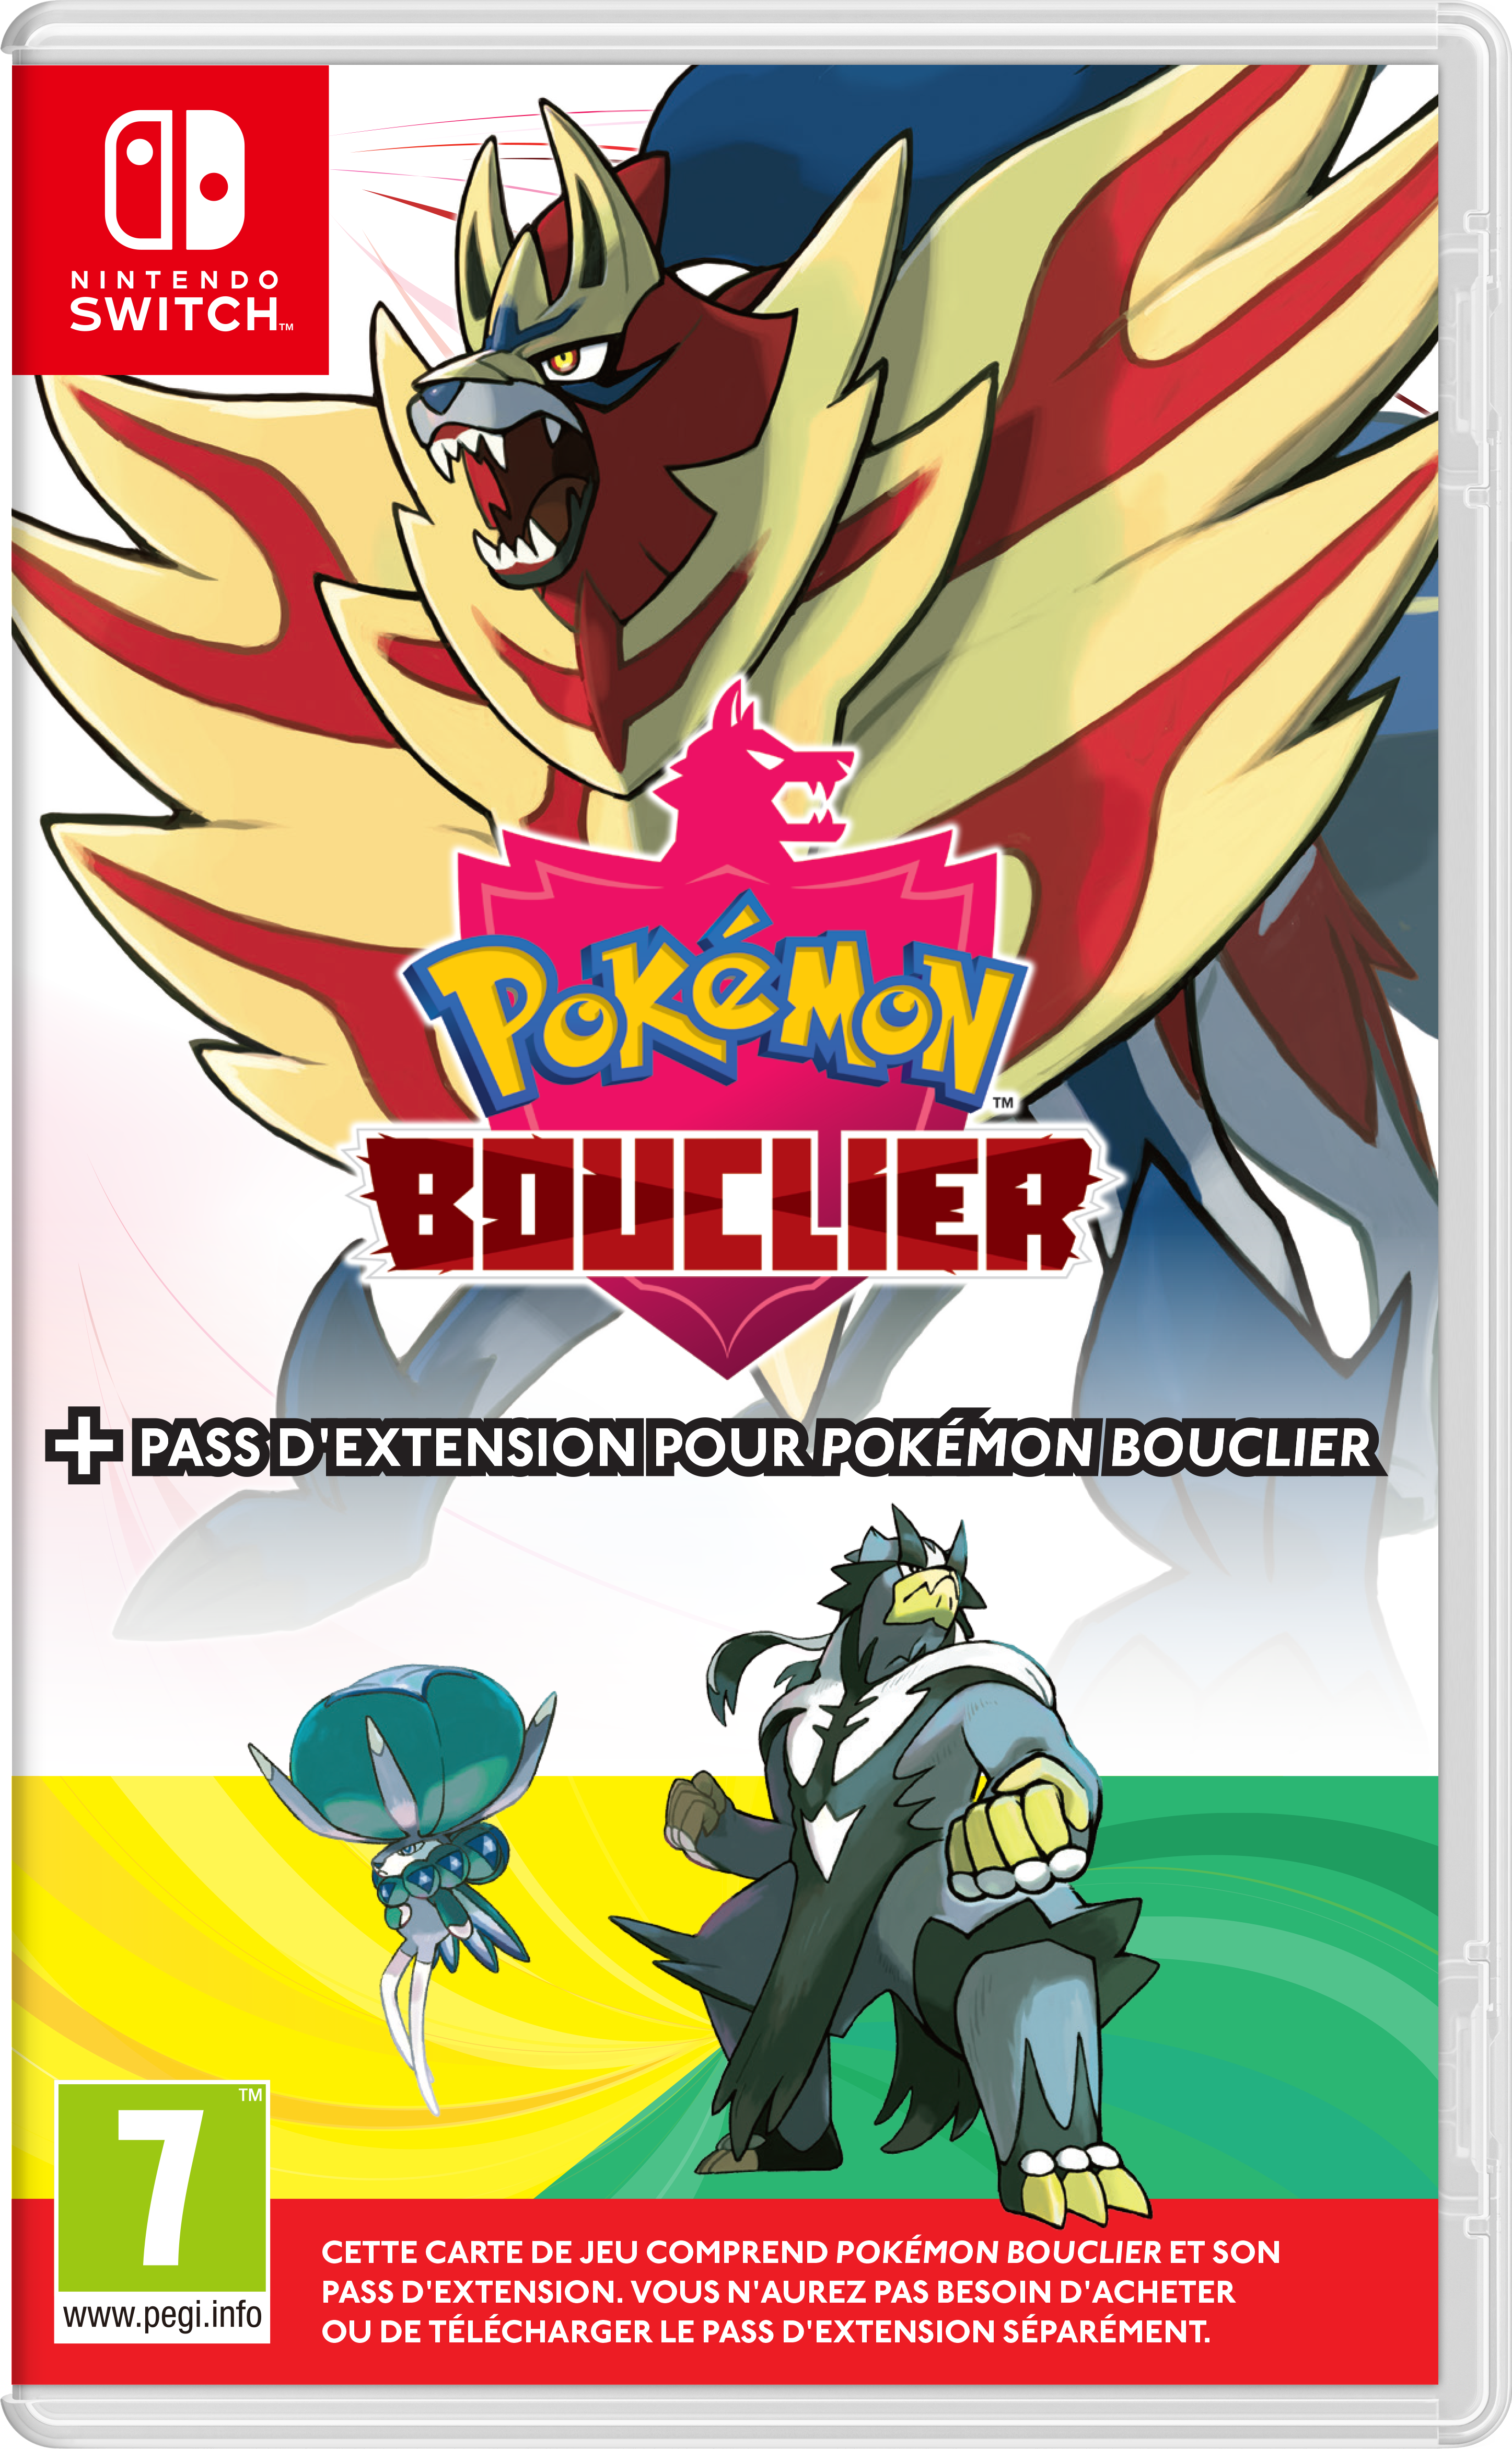 § Pokémon Bouclier + Pass d'extension